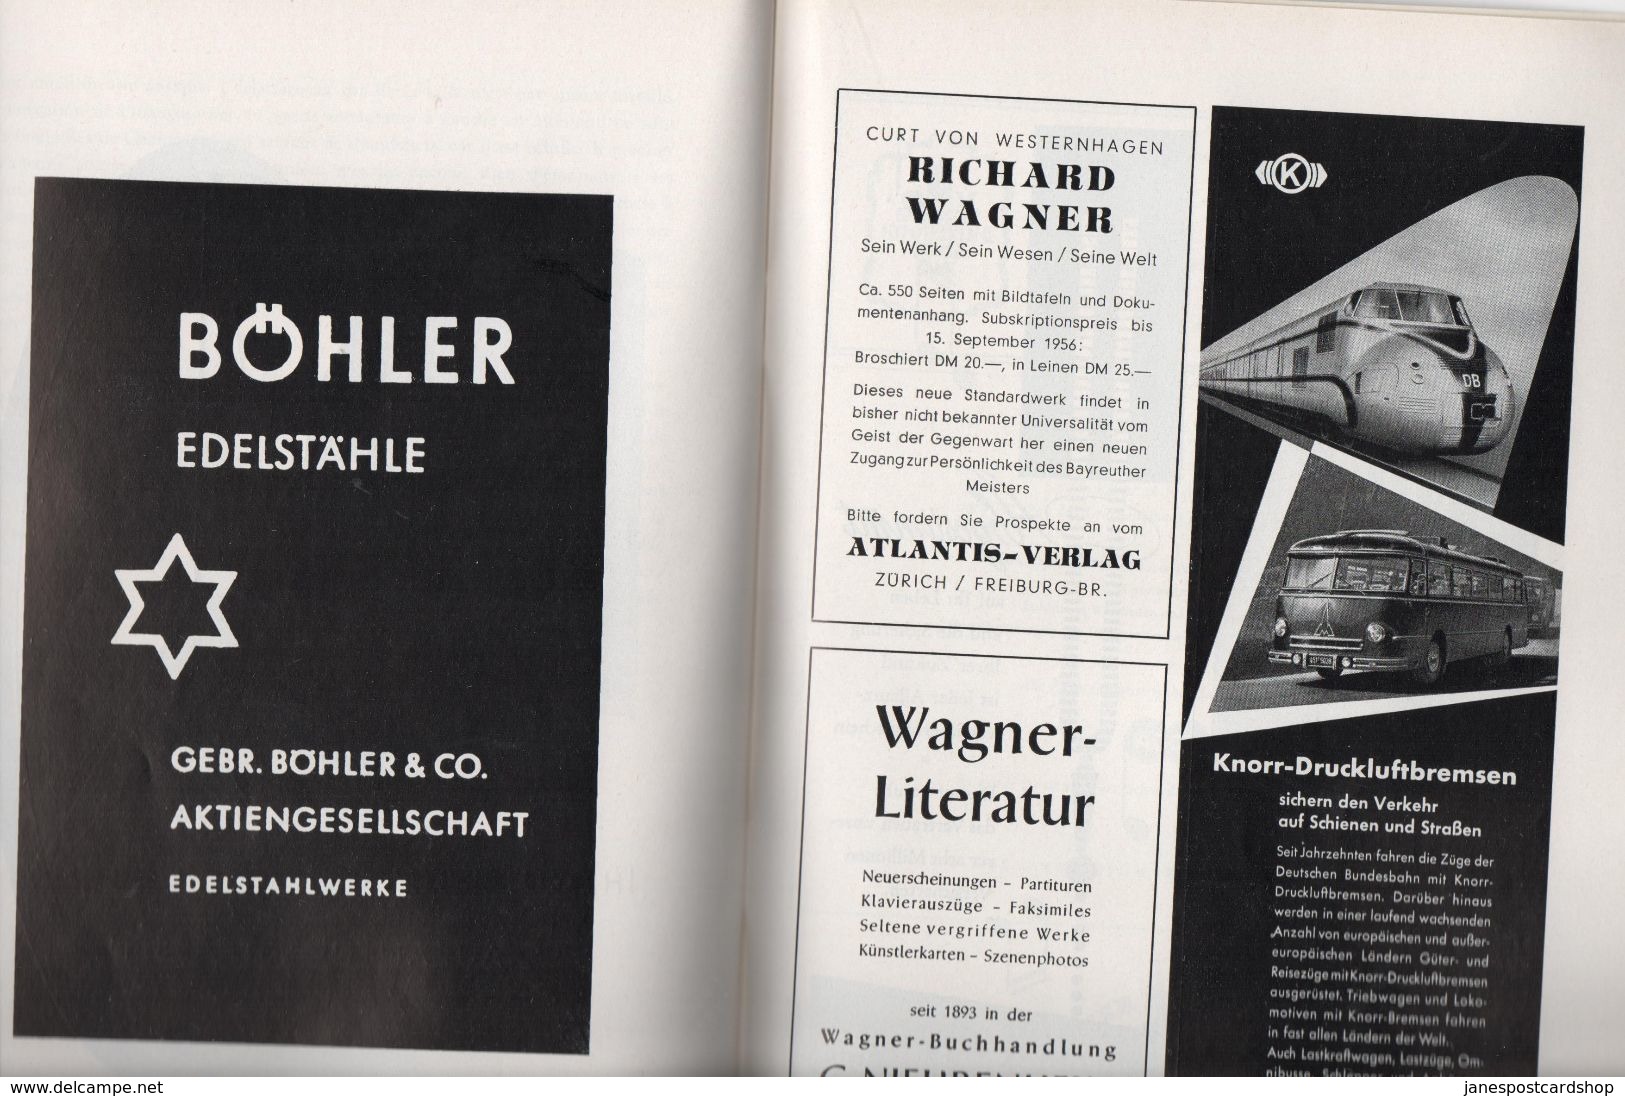 BAYREUTHER FESTSPIELE 1956 DER FLIEGENDE HOLLANDER - Good Adverts - Theatre & Dance